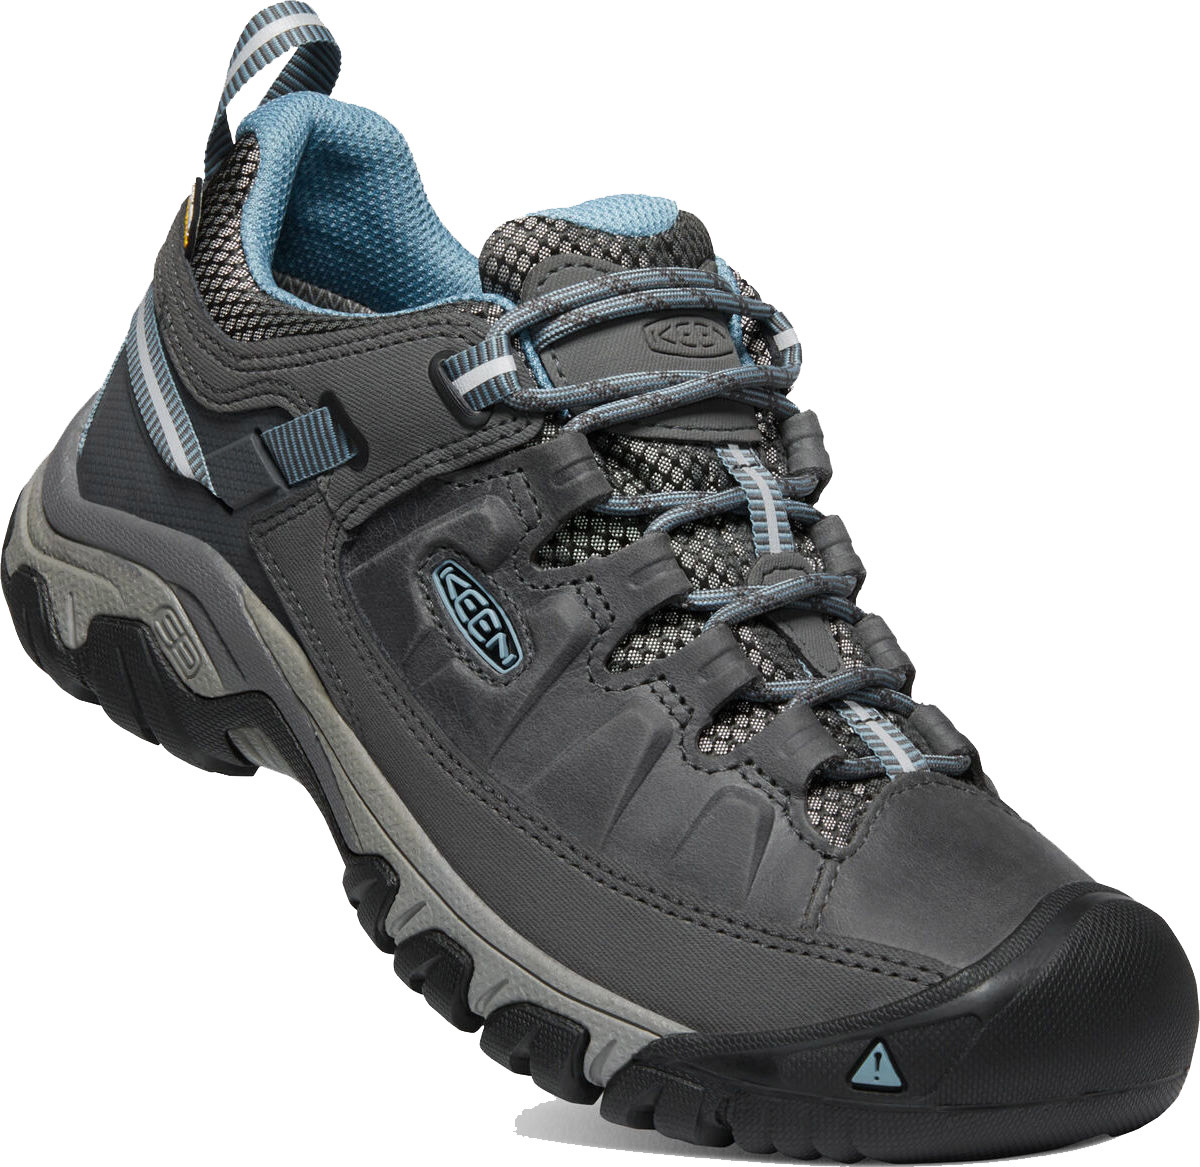 Keen Women's Targhee III Waterproof Hiking Shoes Magnet/Atlantic Blue 38.5, Magnet/Atlantic Blue